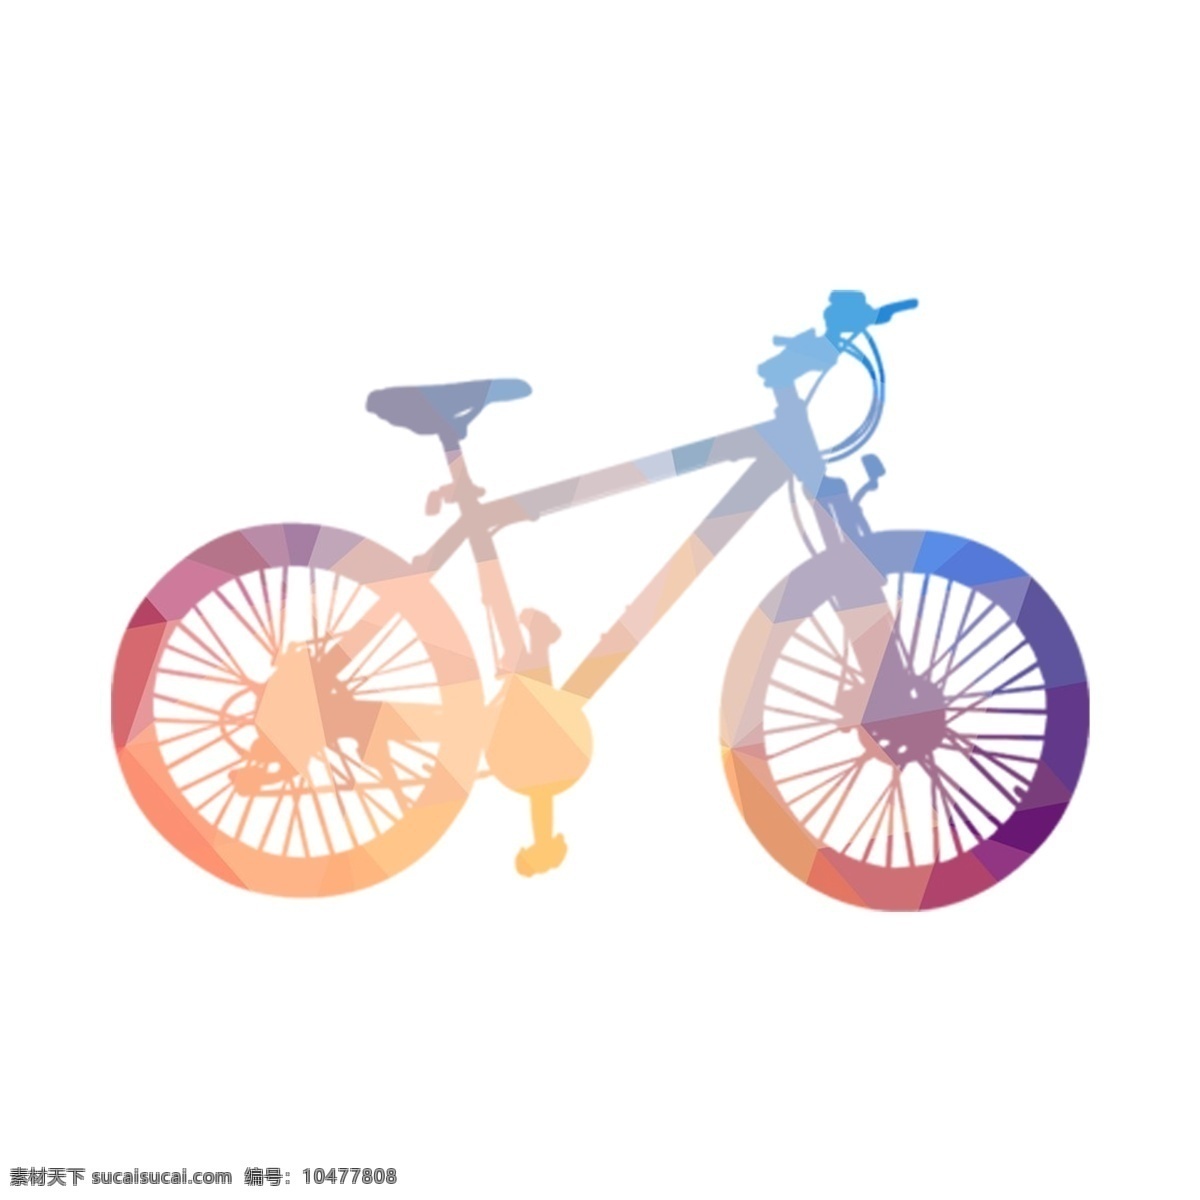 基础 交通工具 自行车 扁平化 剪影 彩色